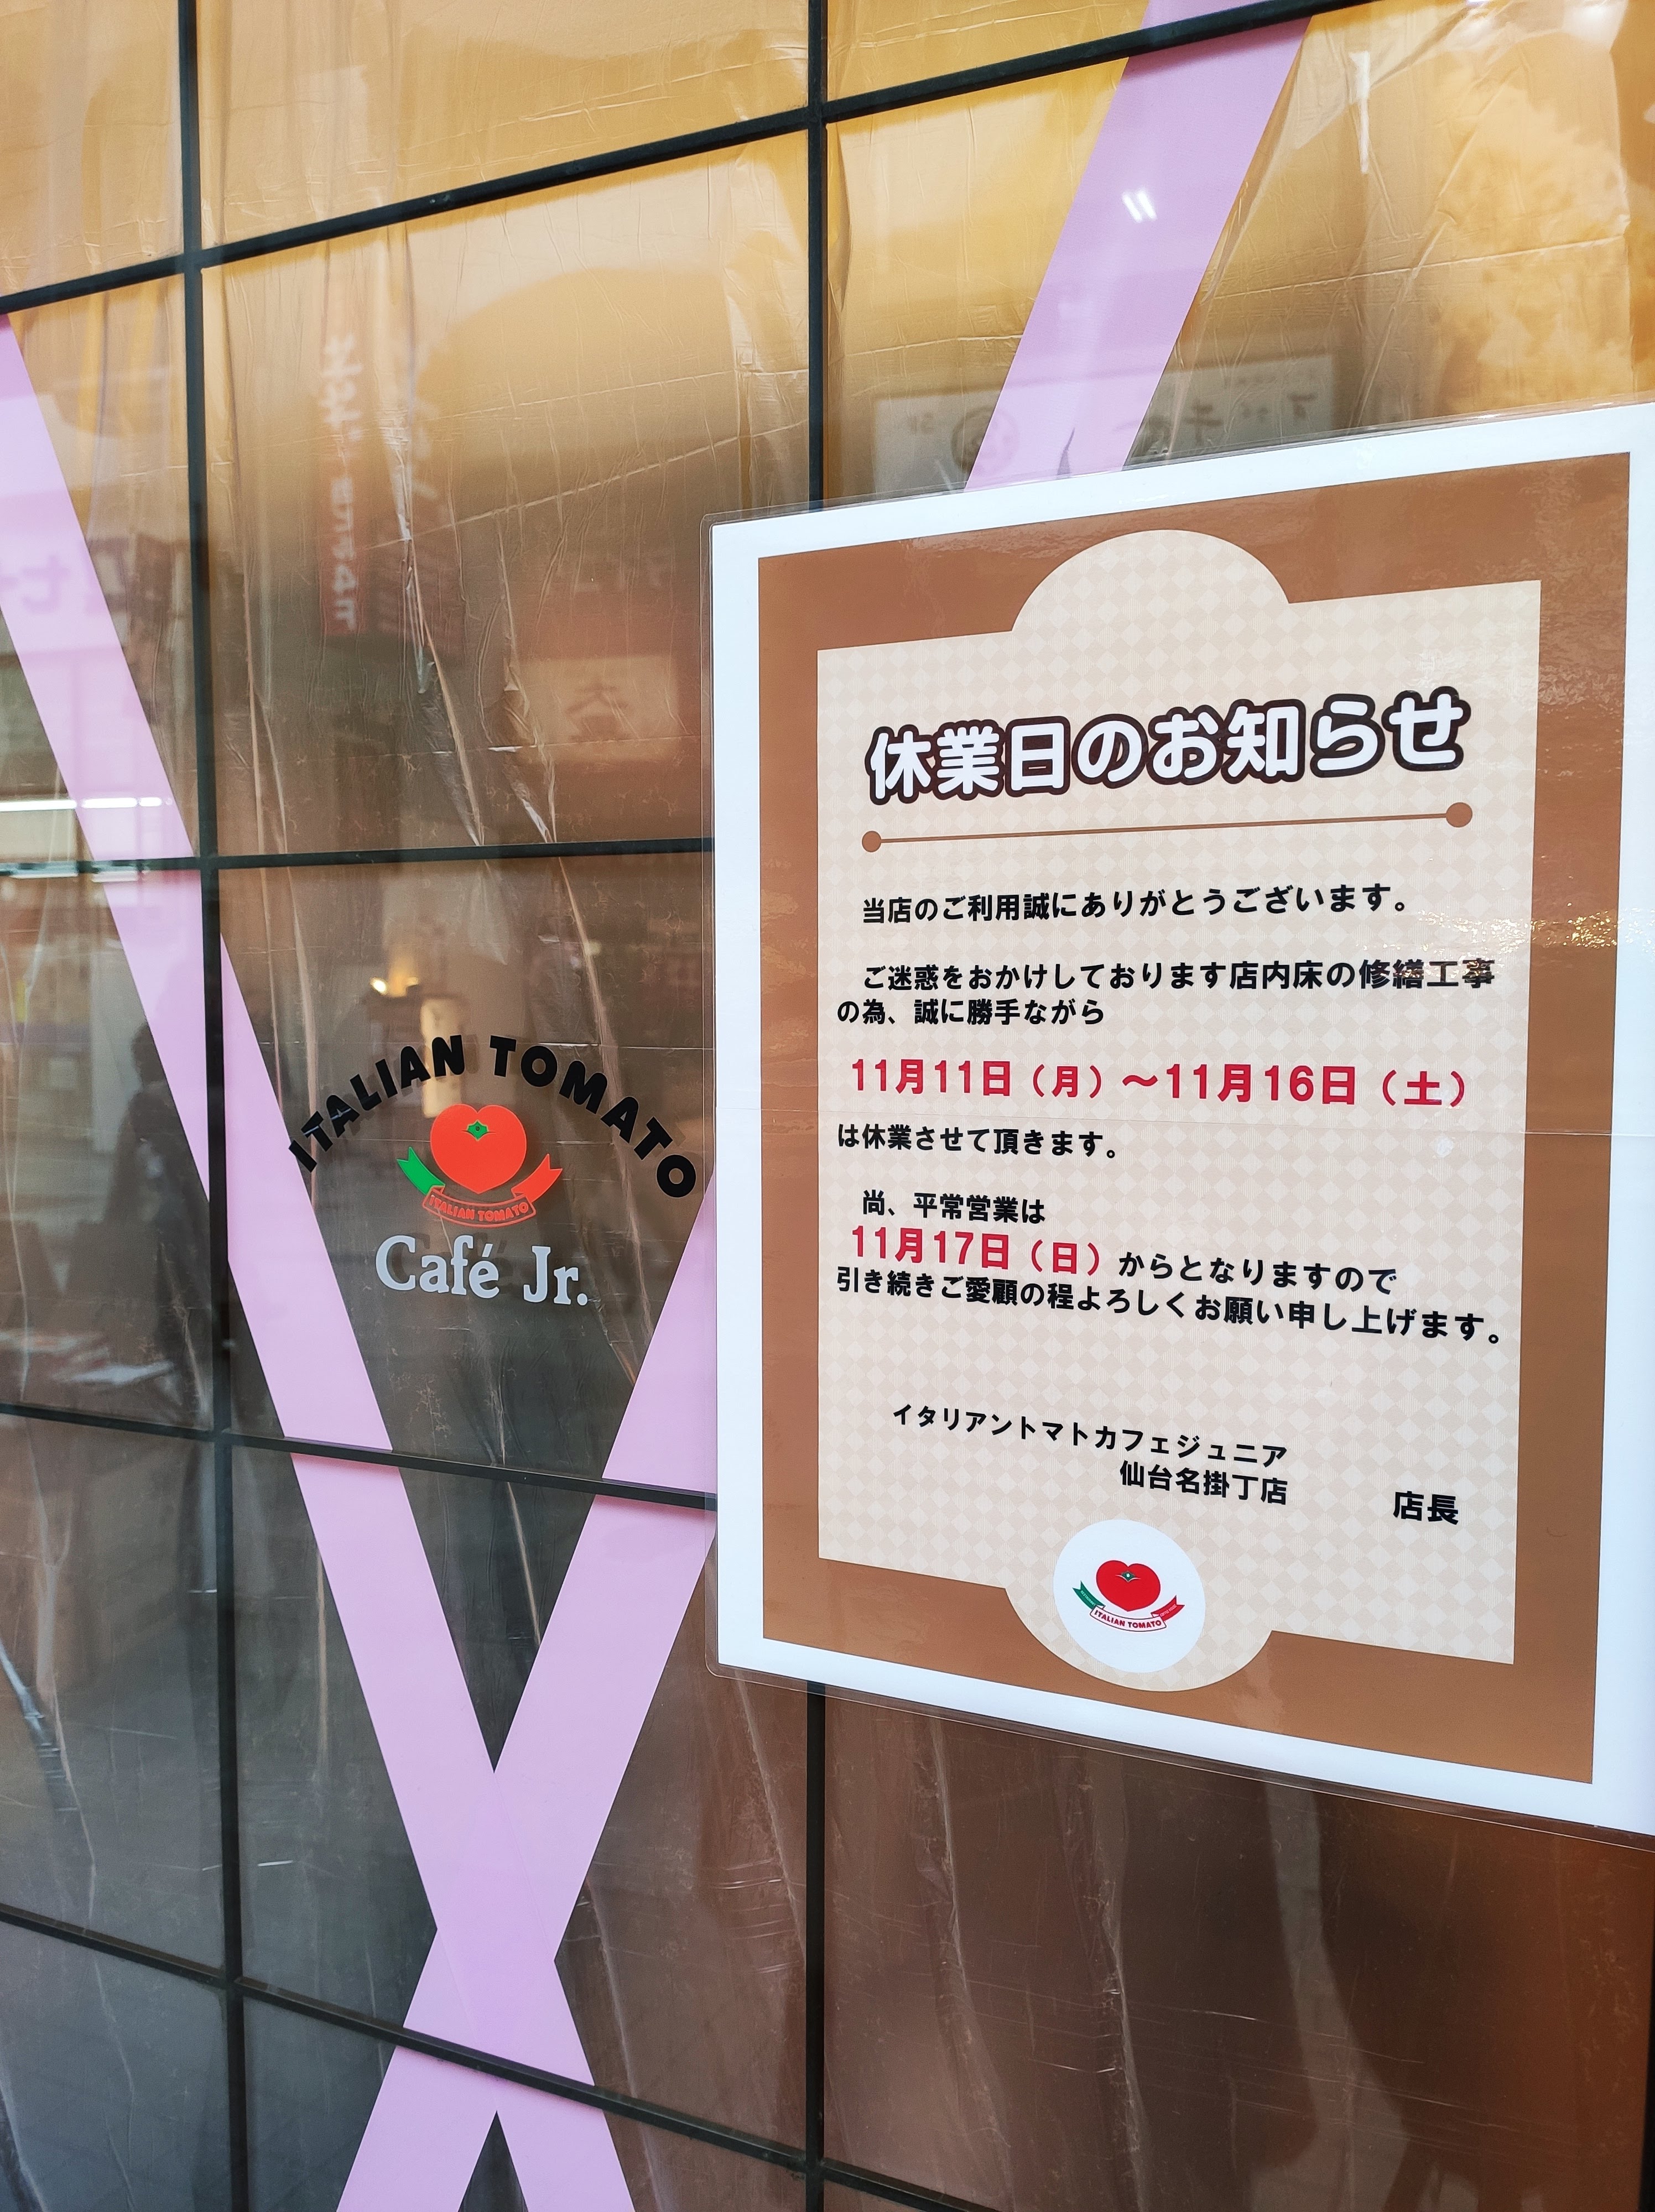 イタリアン・トマト CafeJr. 仙台名掛丁店が11/11より休業中！営業開始日はいつ？